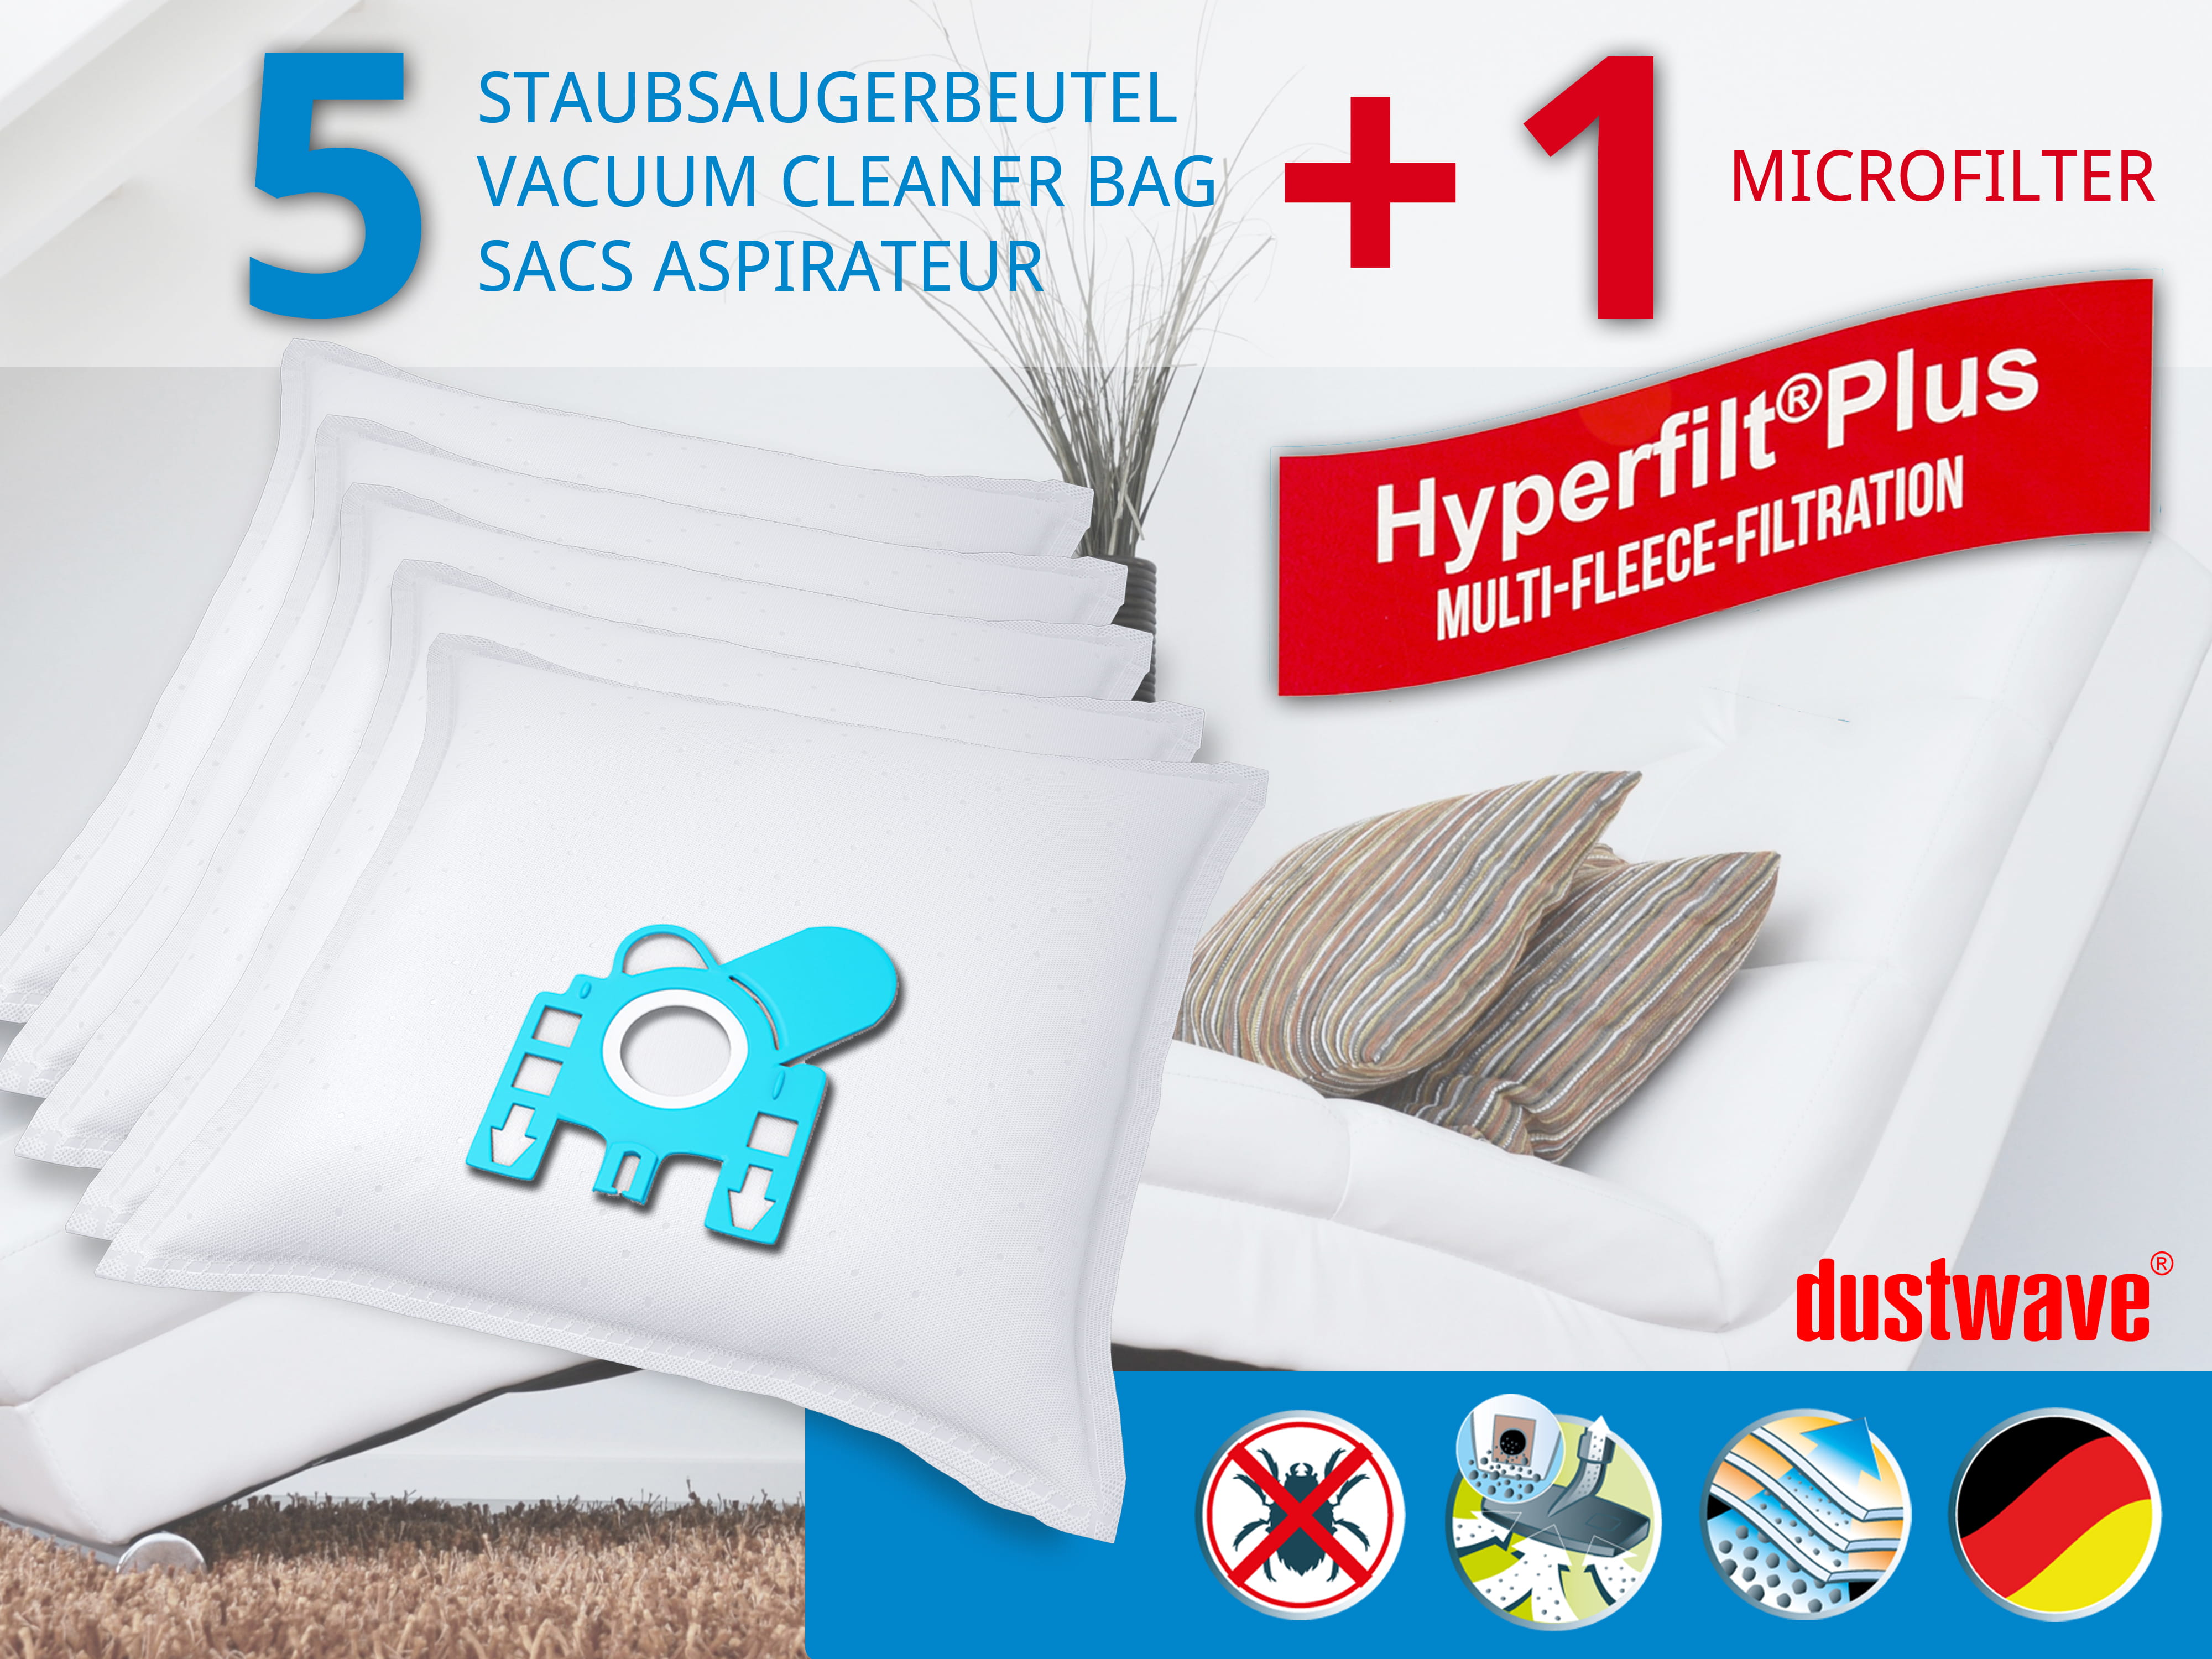 Dustwave® 5 Staubsaugerbeutel für Miele Allergy Hepa 4000 - hocheffizient, mehrlagiges Mikrovlies mit Hygieneverschluss - Made in Germany